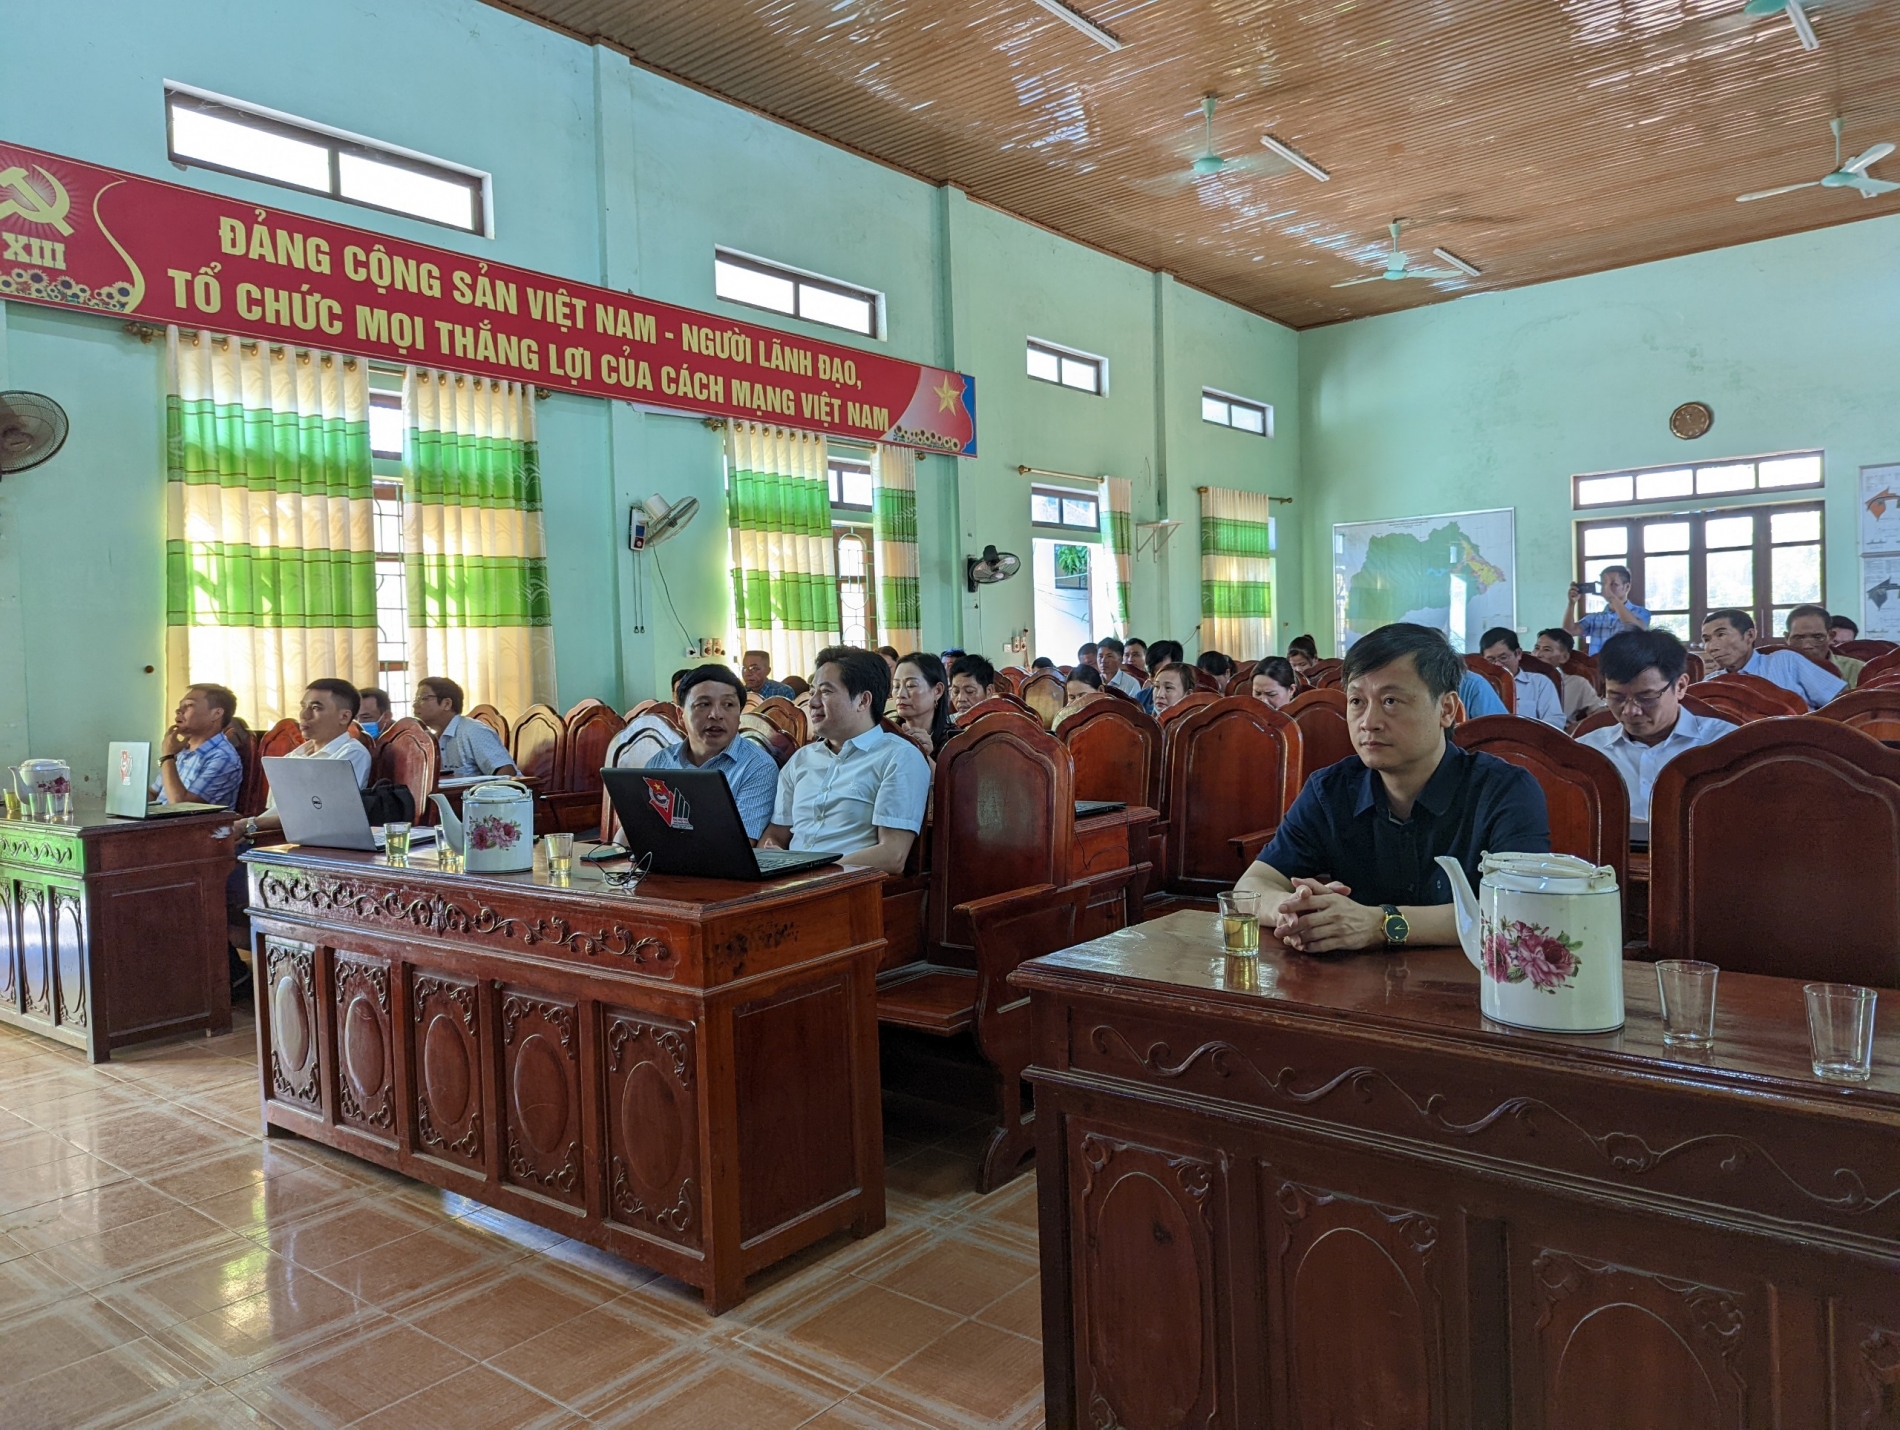 Tập huấn dịch vụ công trực tuyến, chuyển đổi số cho người dân, doanh nghiệp và cán bộ trên địa bàn xã Hòa Hải, huyện Hương Khê 